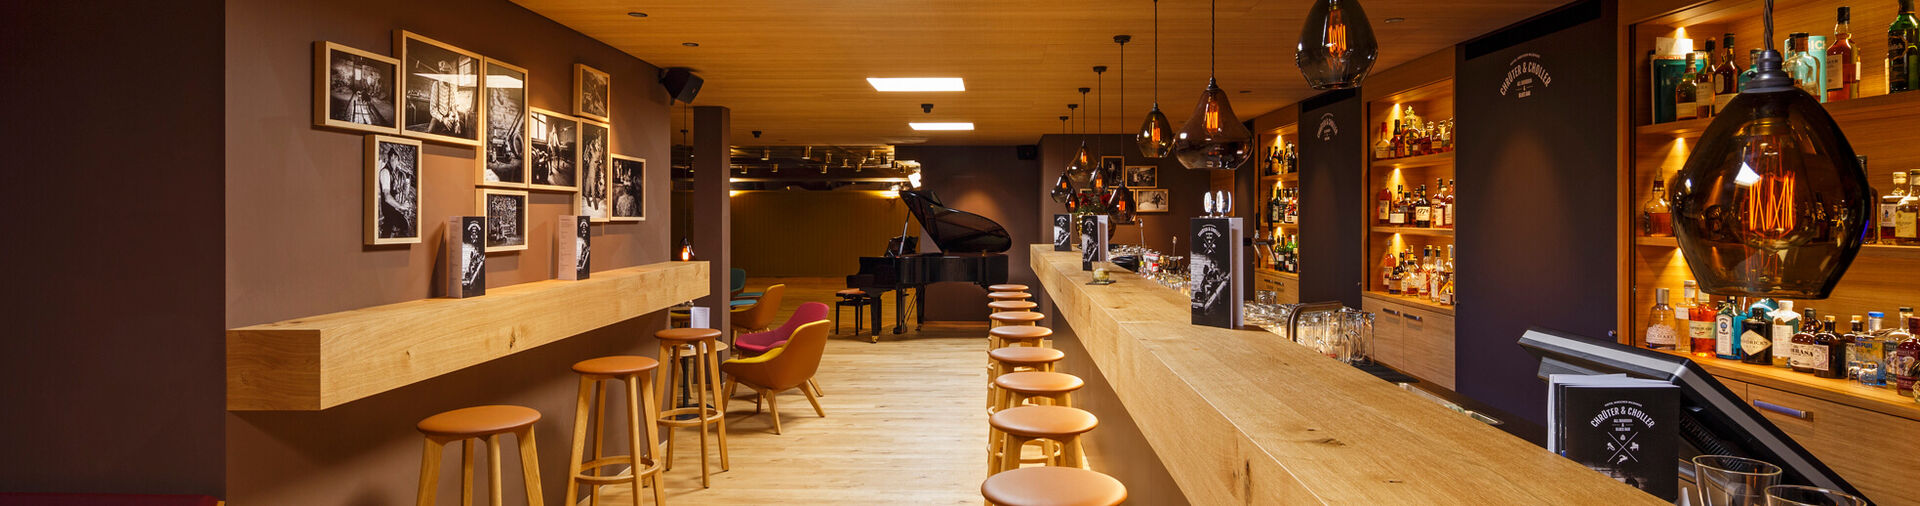 Einblick in die Bar Chrütter & Choller; wir setzten auf viel Holz, Licht & eine schöne Atmosphäre.